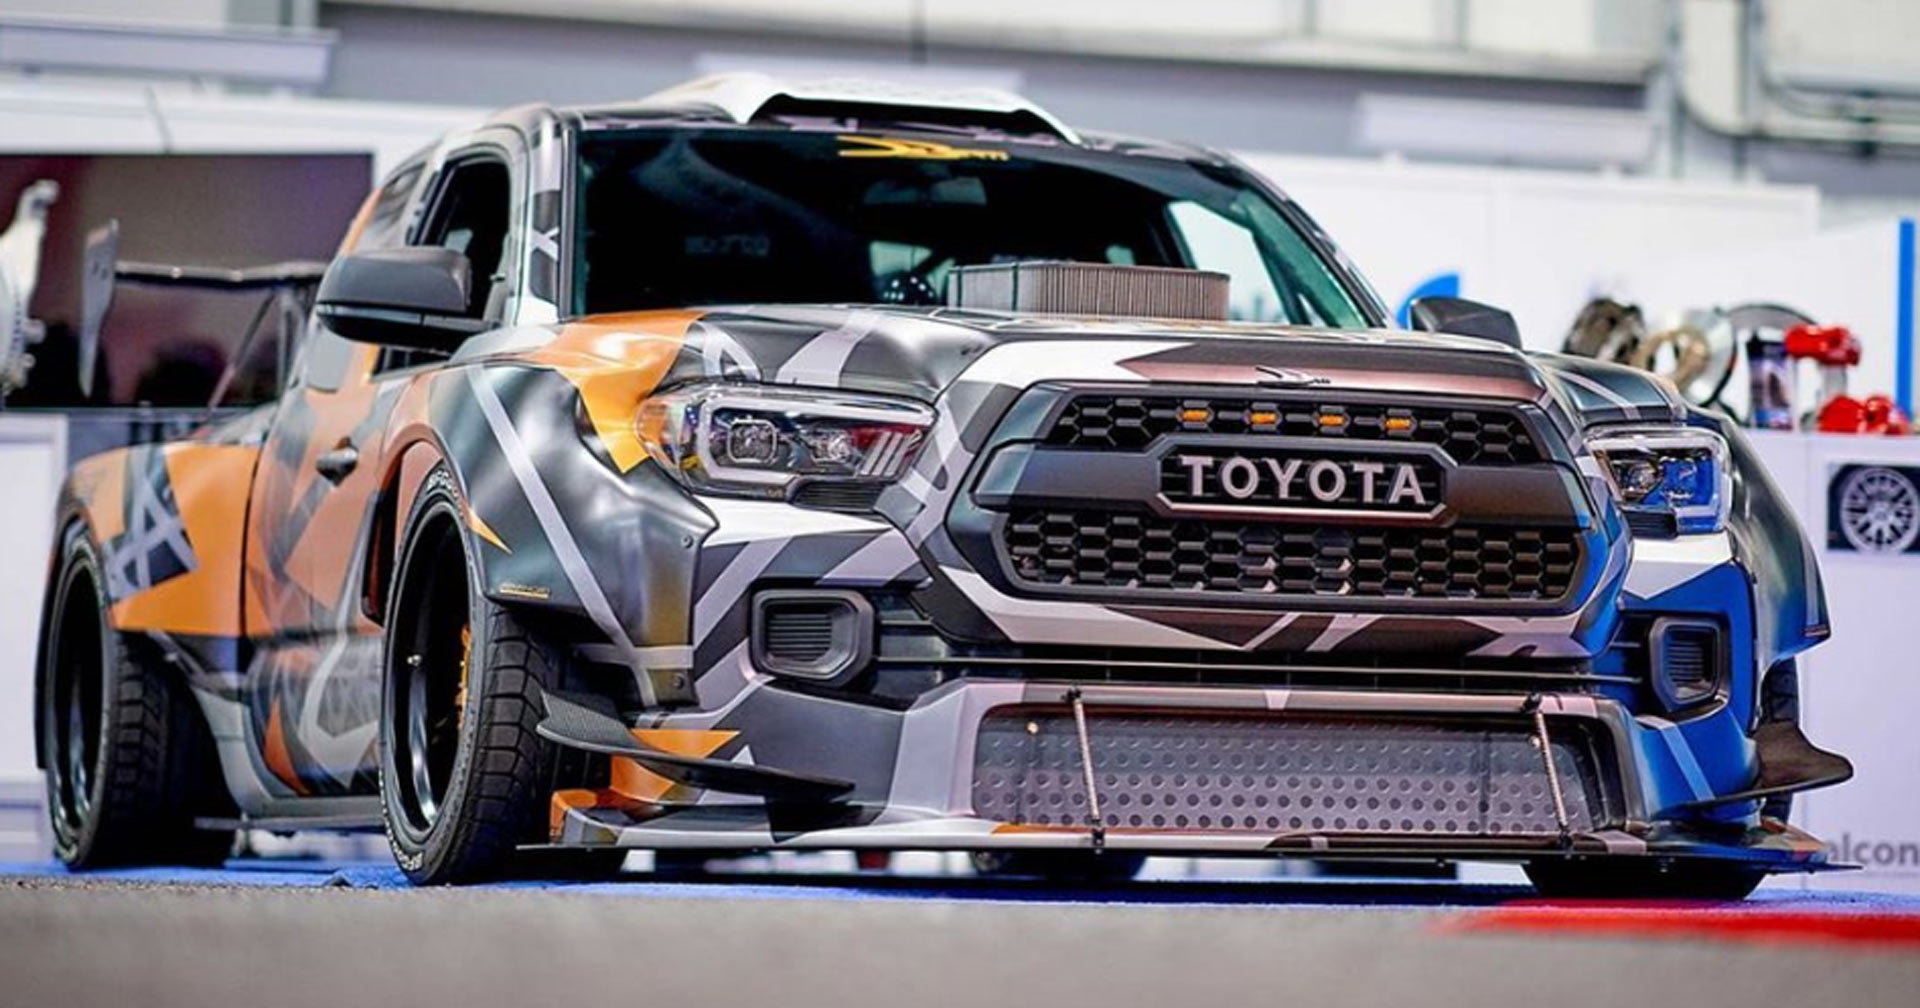 Из пикапа Toyota сделали 900-сильный дрифт-кар